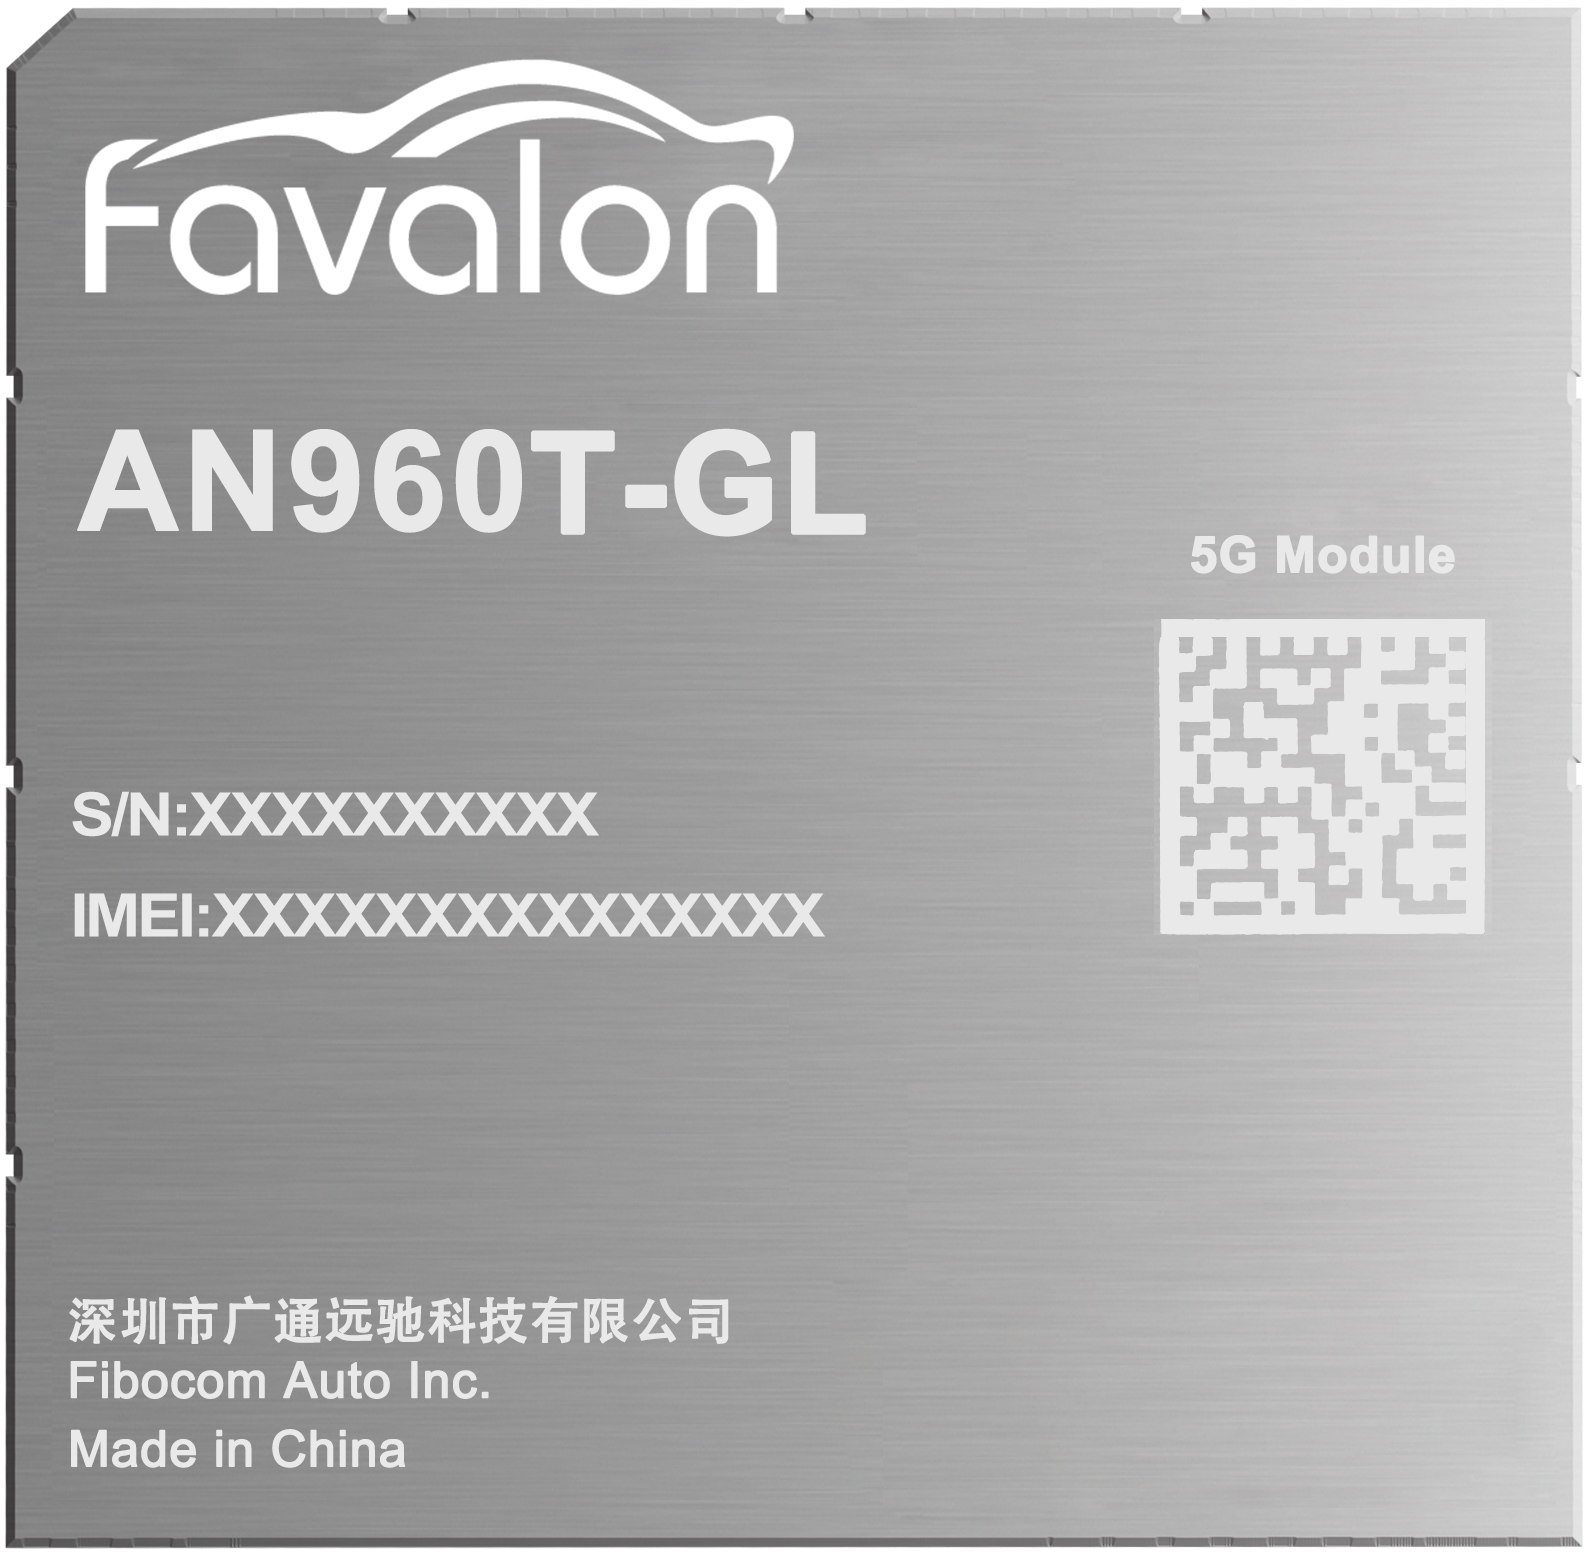 Favalon AN960T